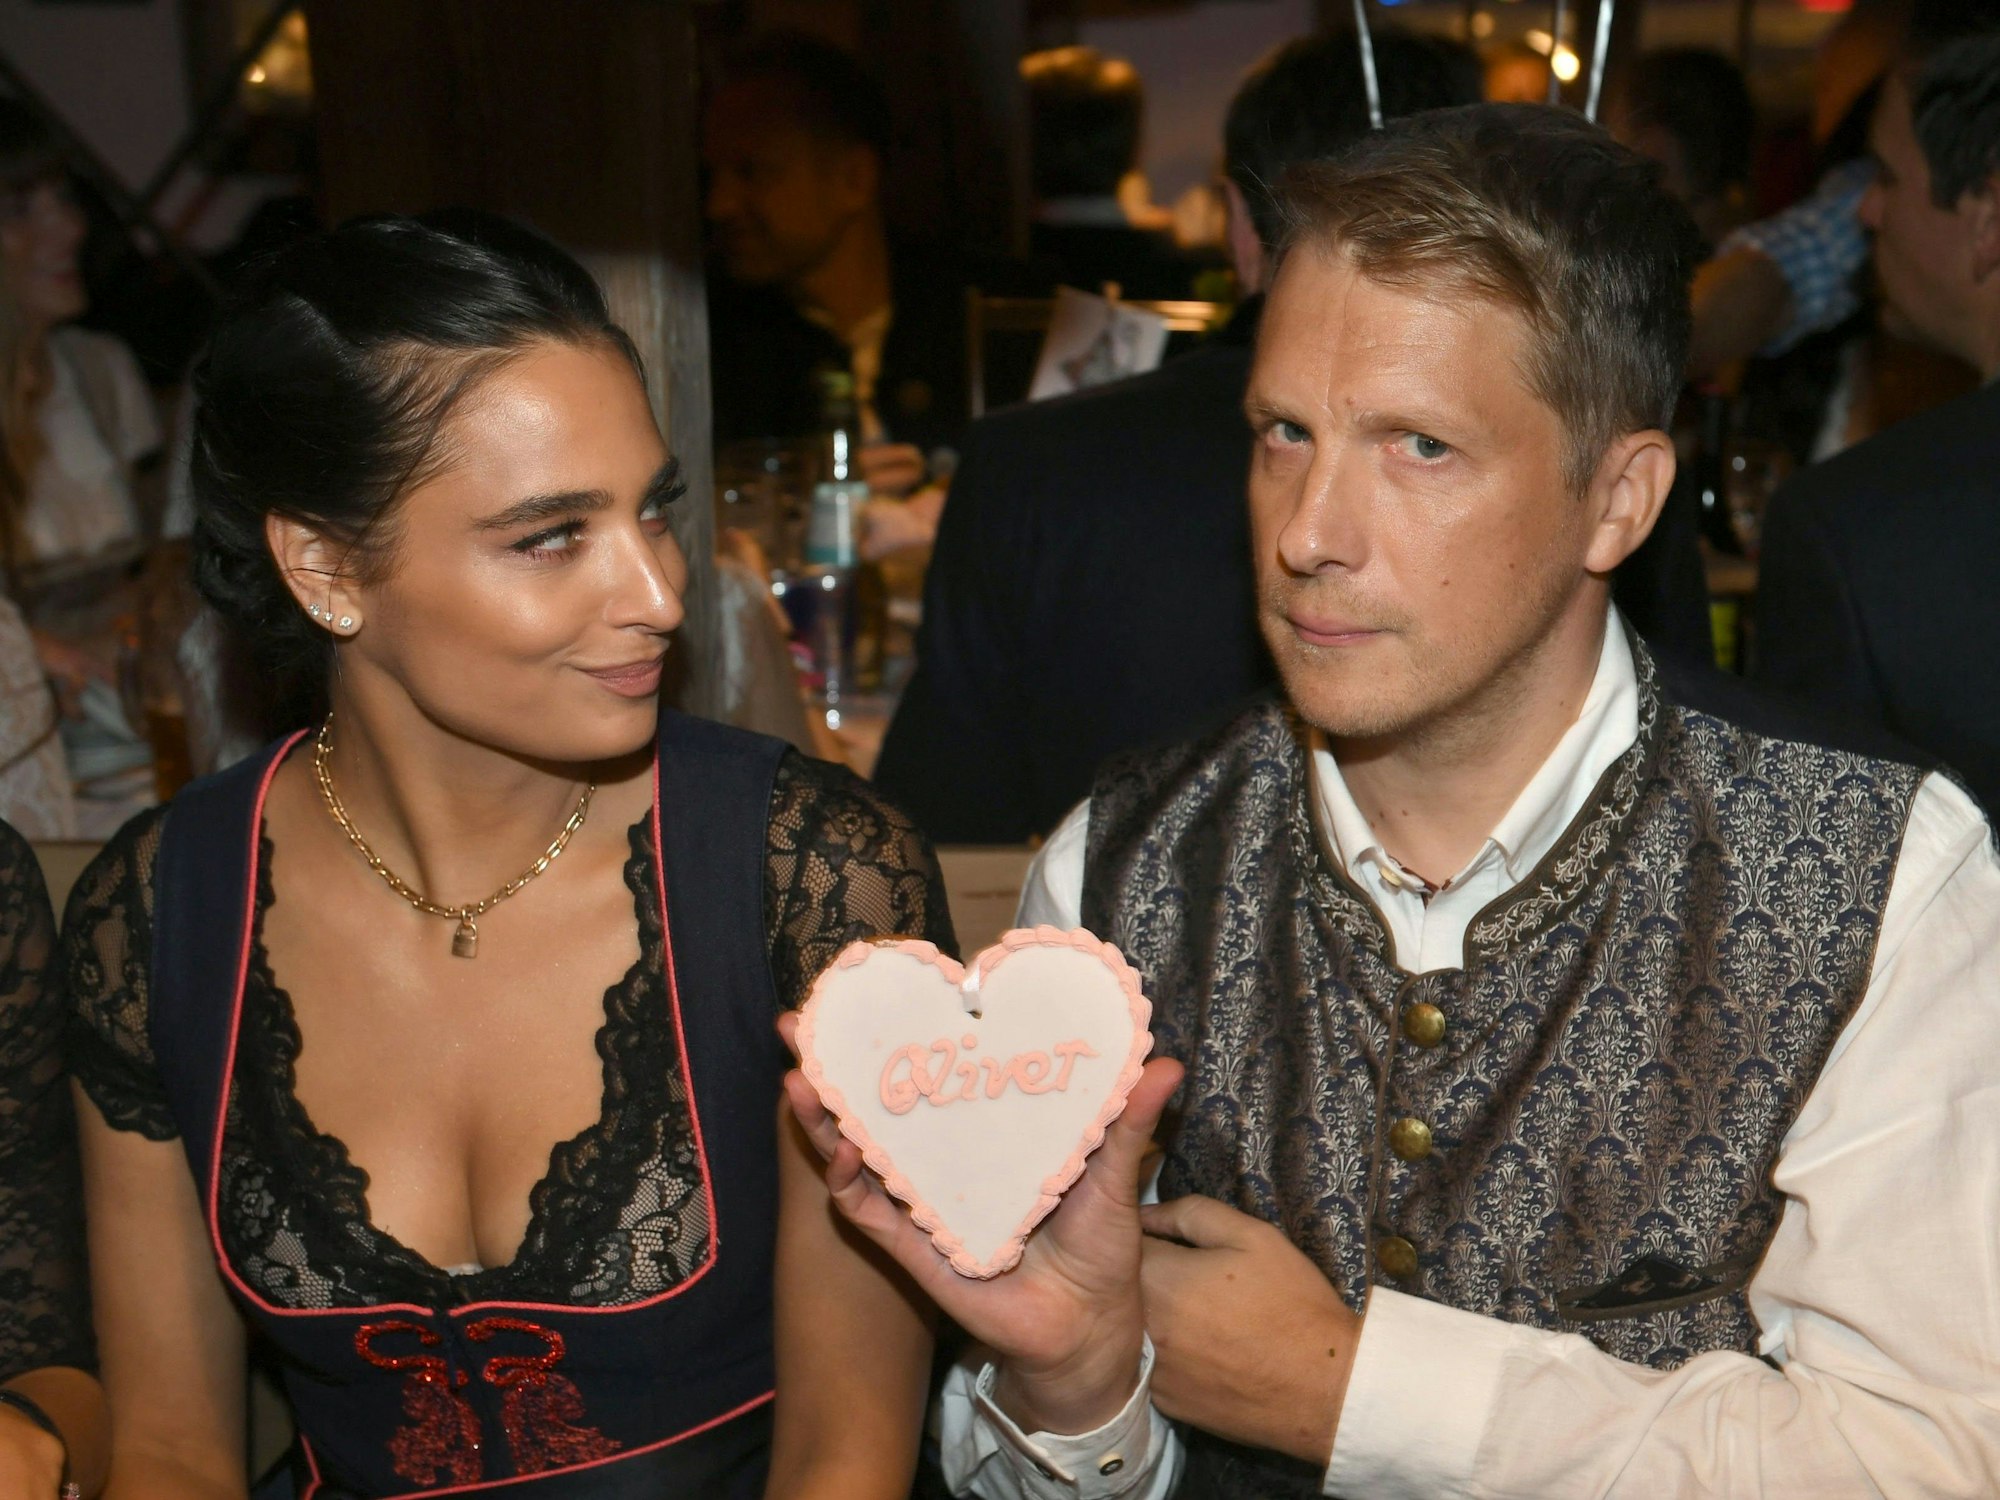 Der Comedian Oliver Pocher und seine Frau Amira feiern beim Almauftrieb im Käfer-Zelt auf dem Oktoberfest.